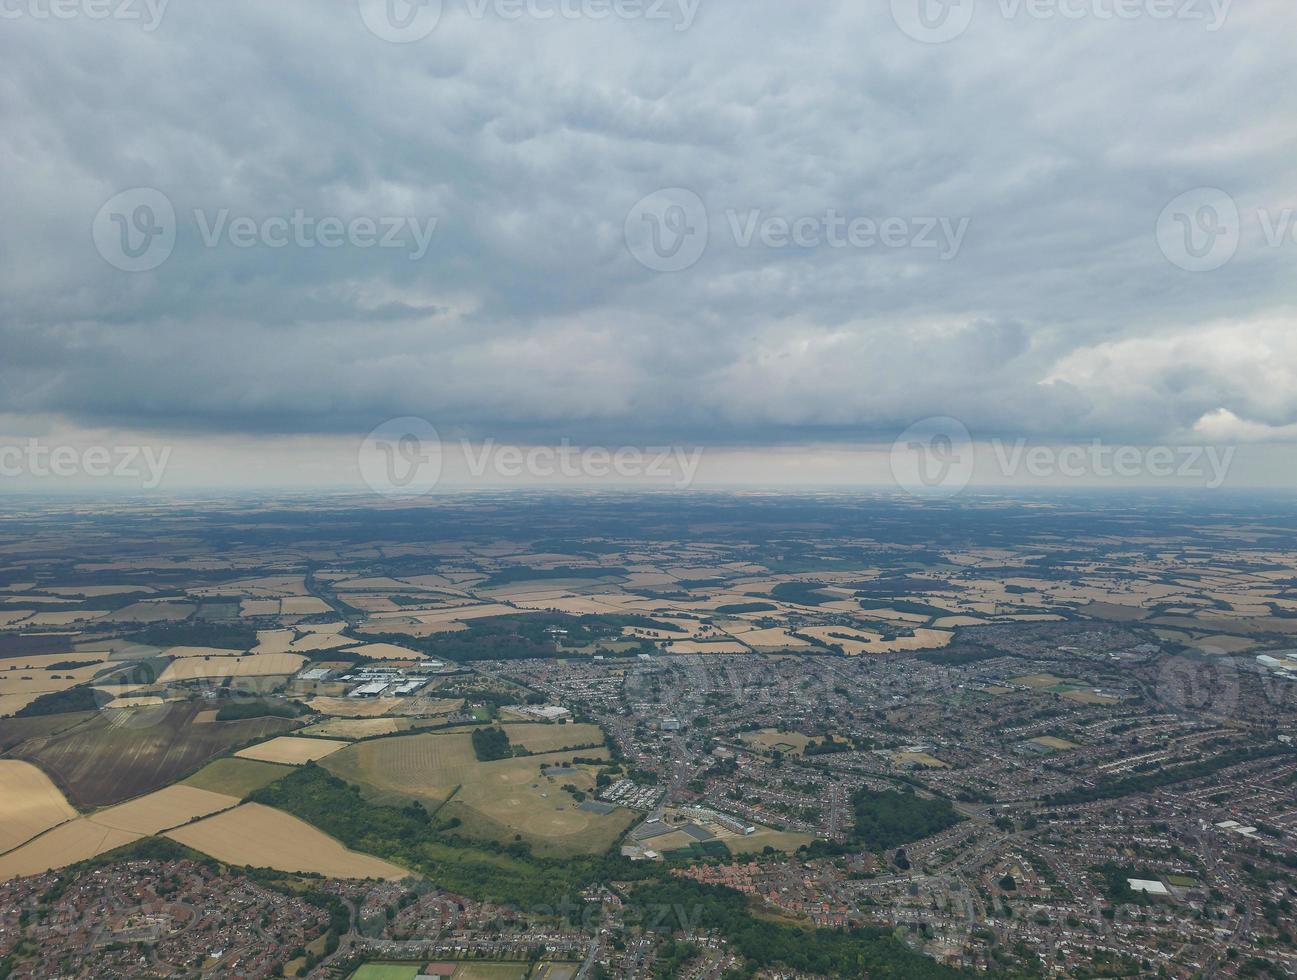 Luftpanoramablick des hohen Winkels von Luton-Stadt von England Großbritannien foto